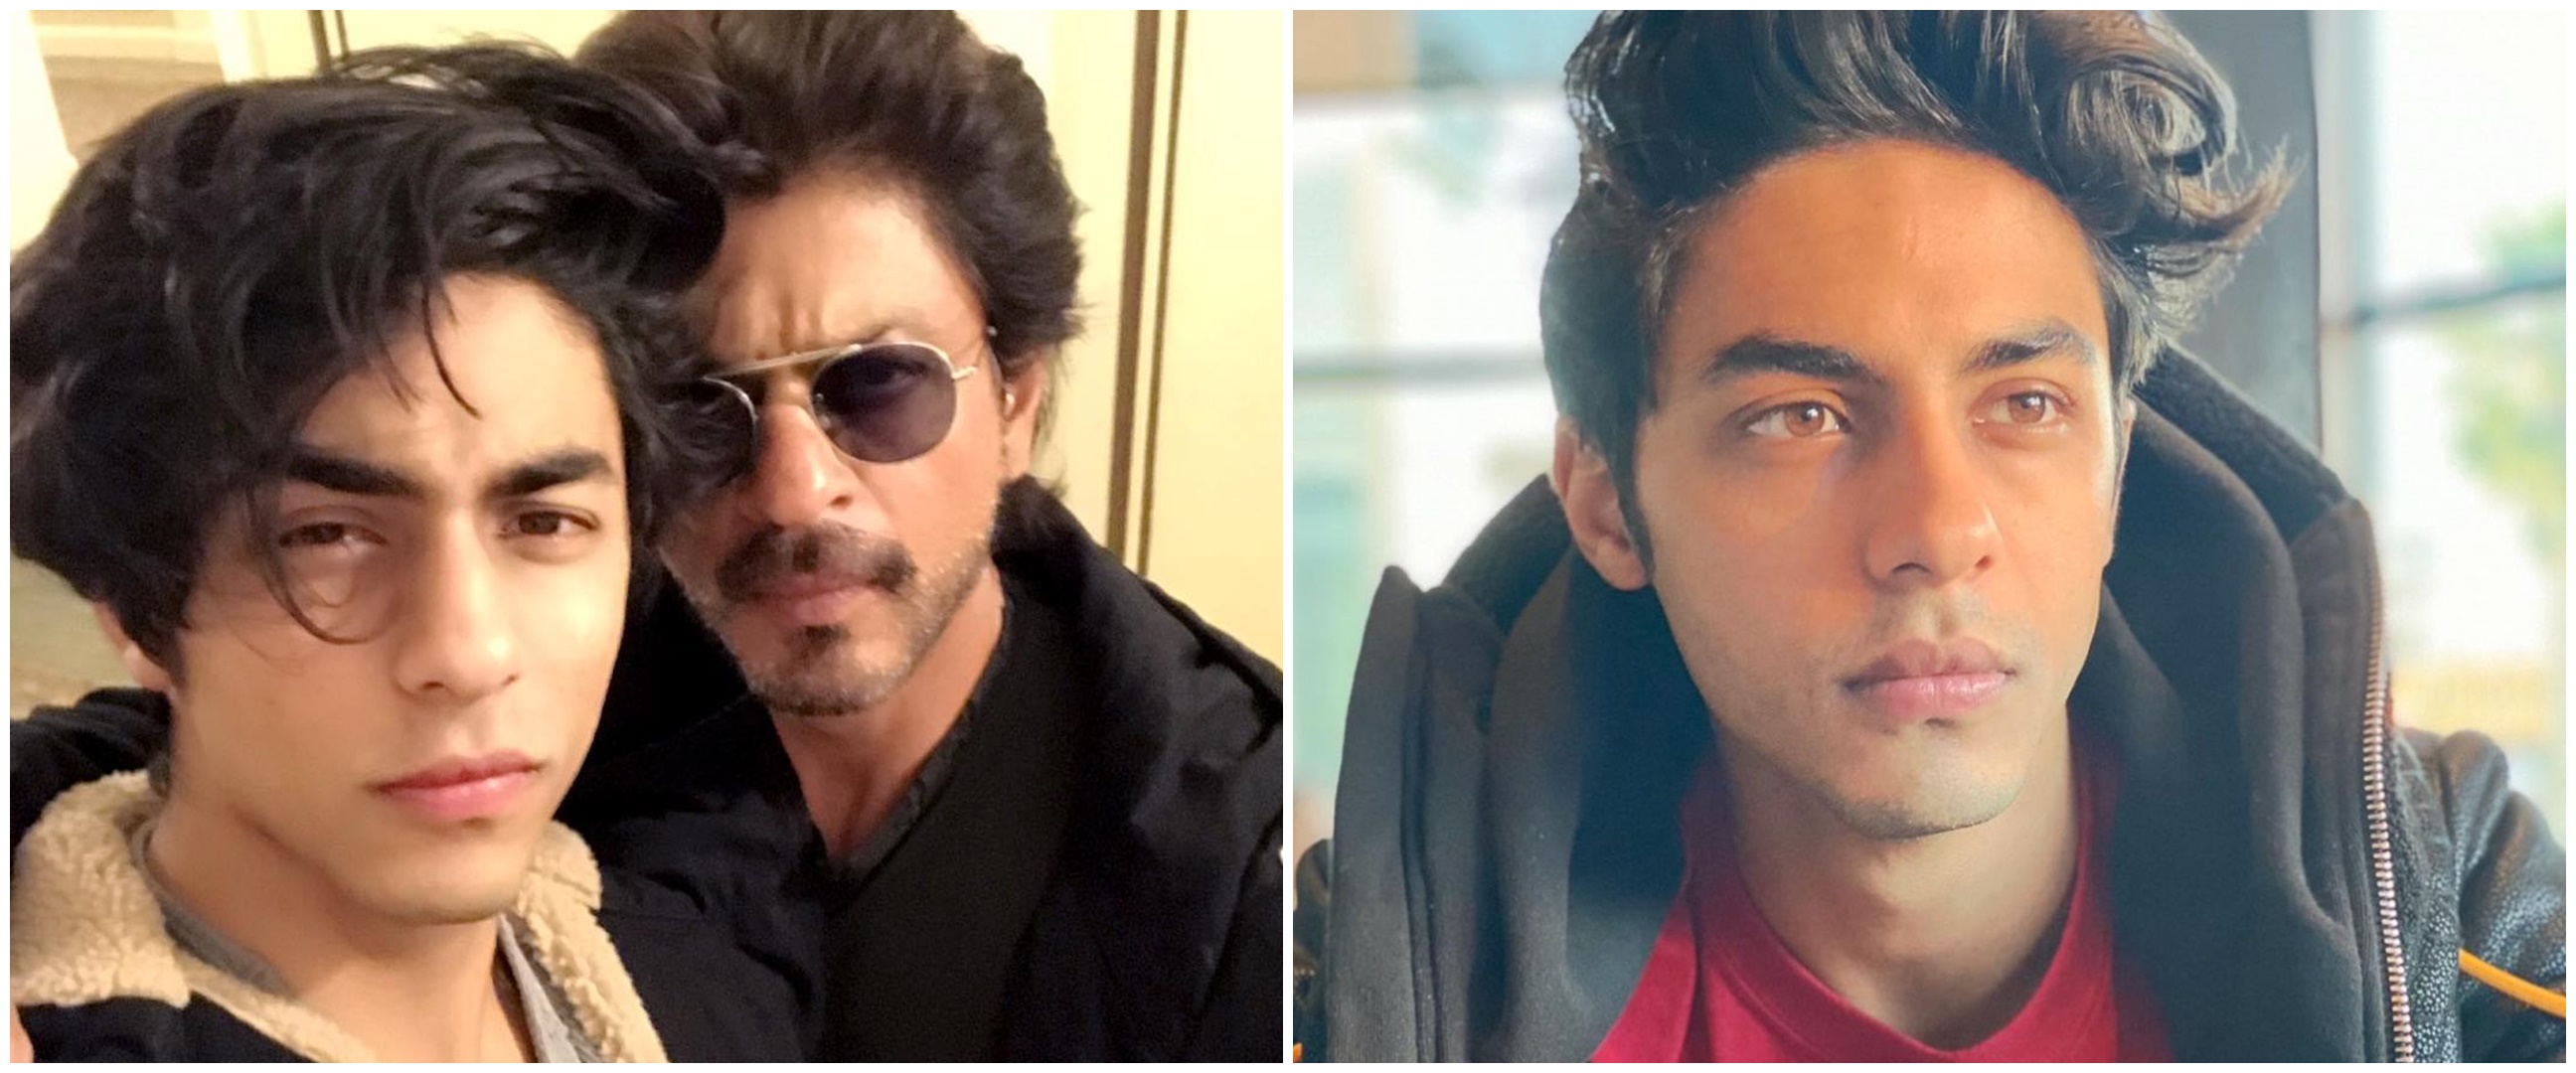 Geger video lawas Shah Rukh Khan izinkan putranya pakai obat terlarang